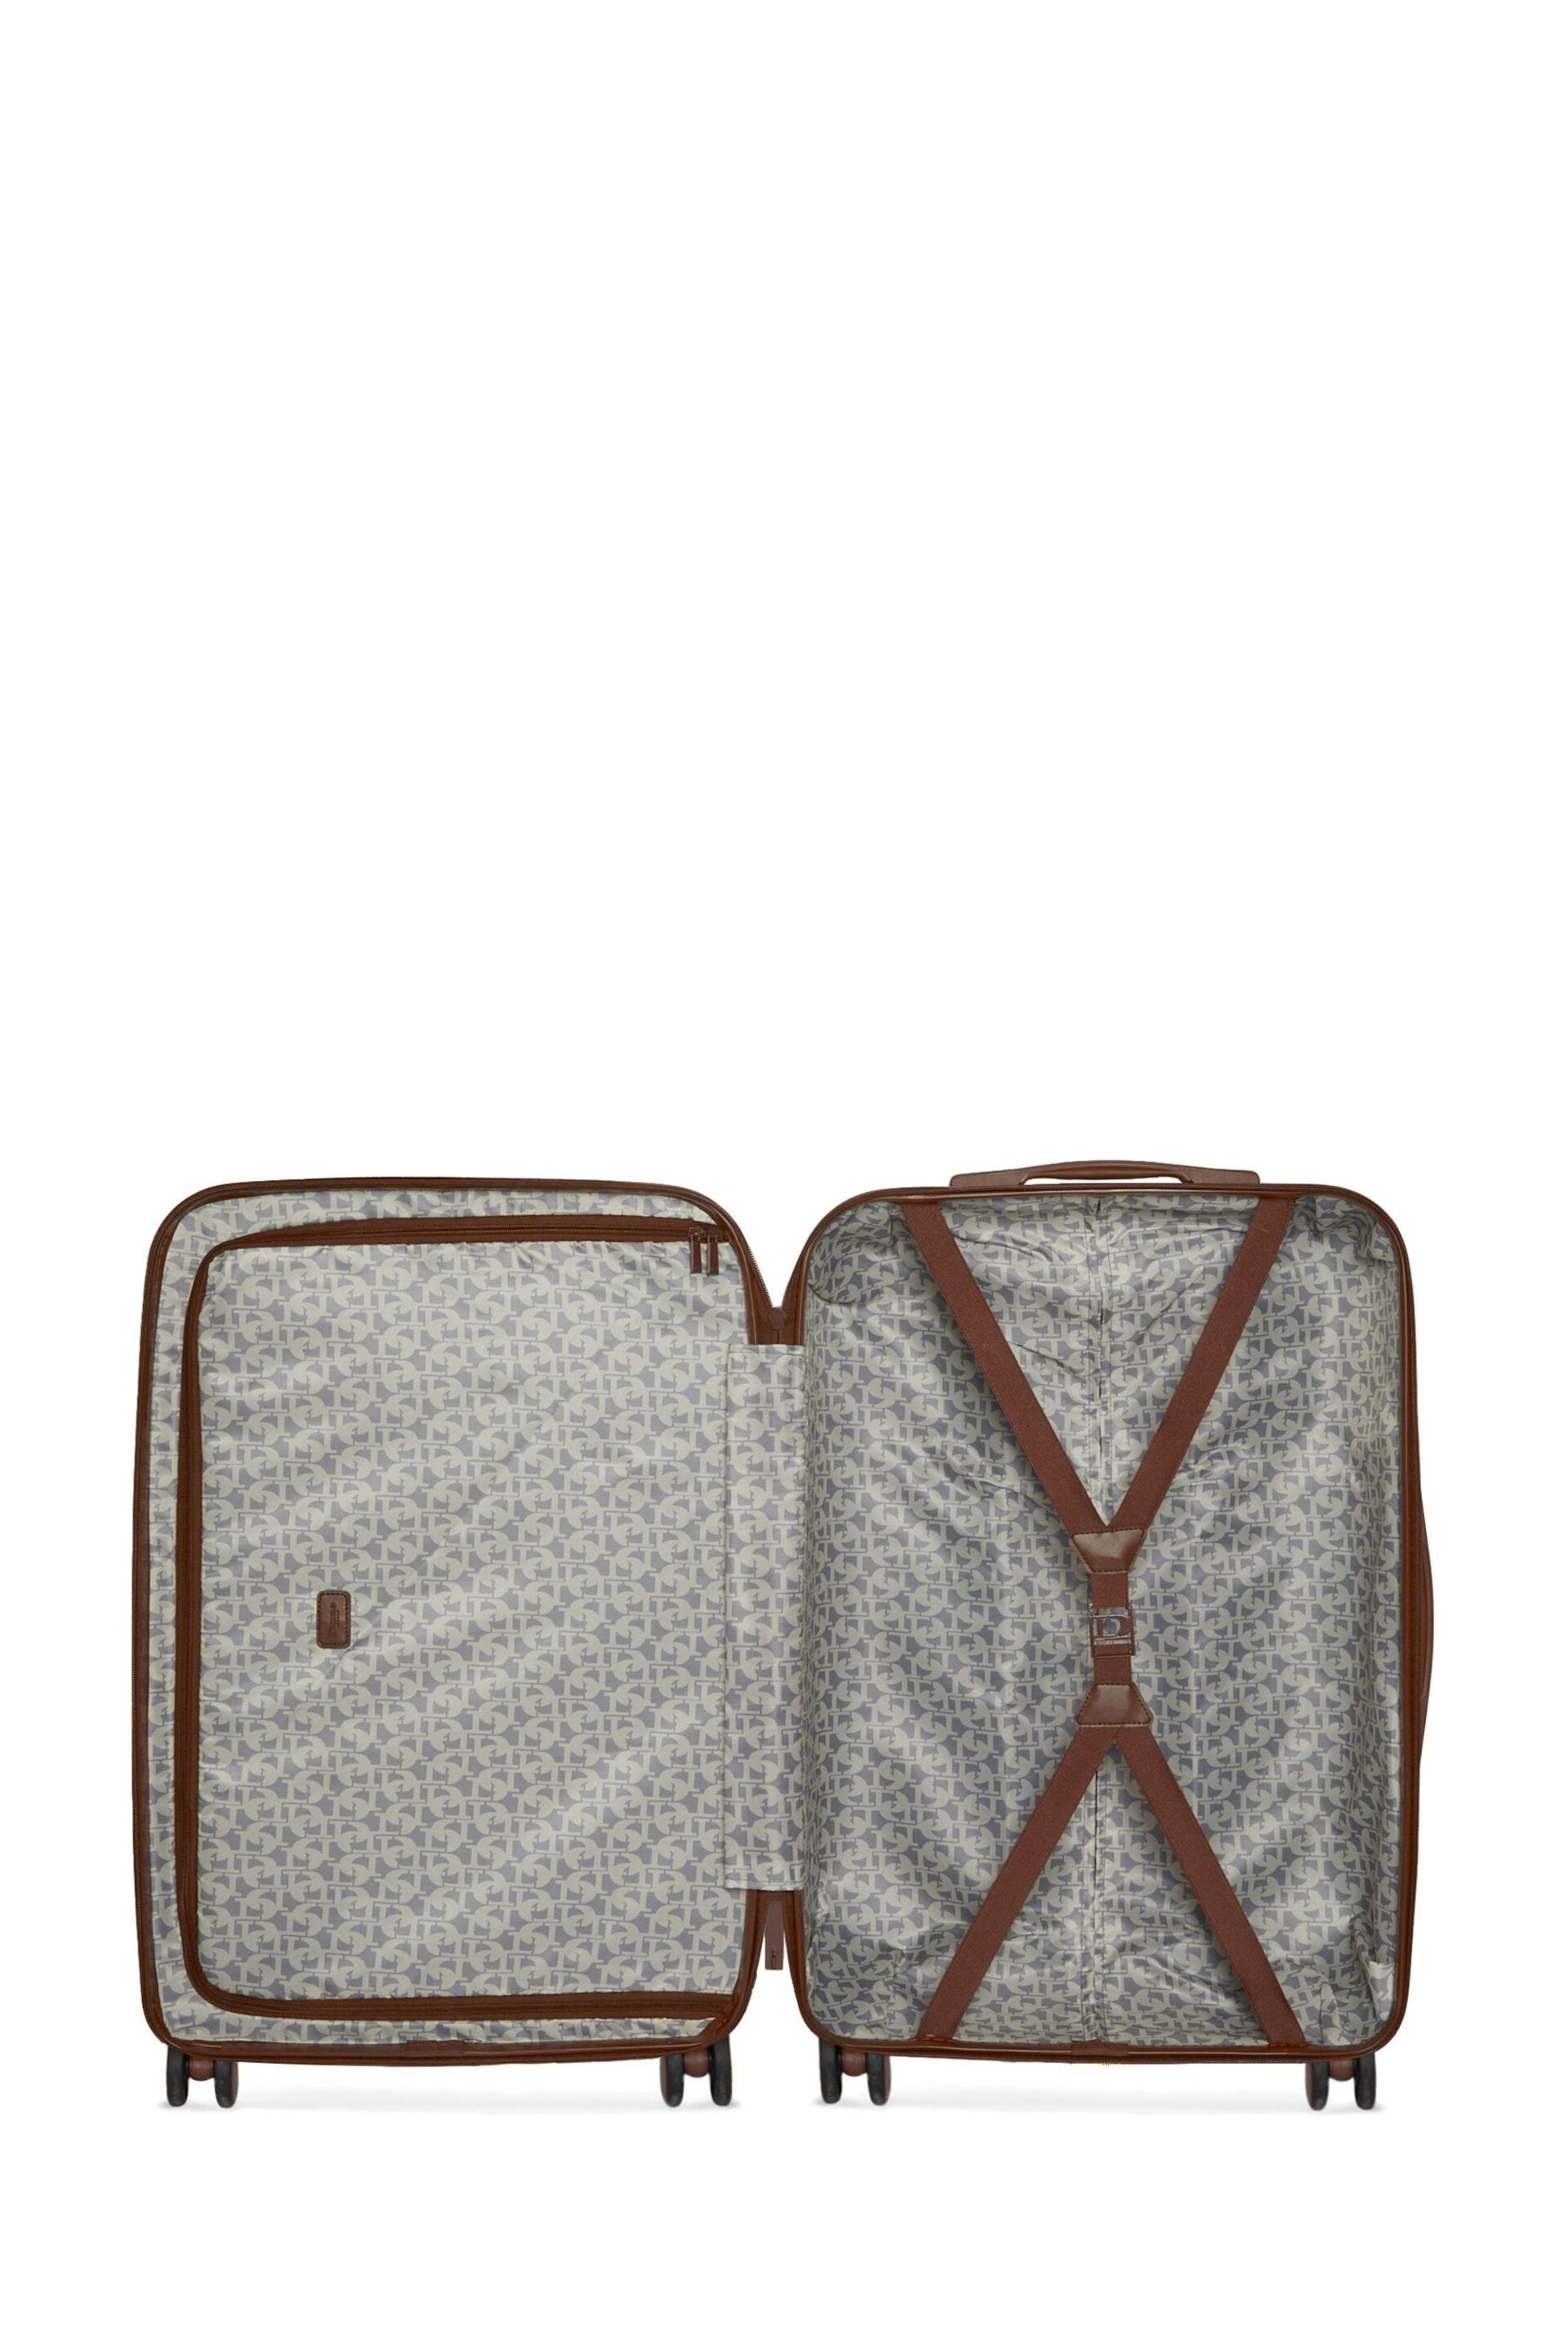 Dune London Cream Onella Medium Suitcase 68cm - Image 3 of 4